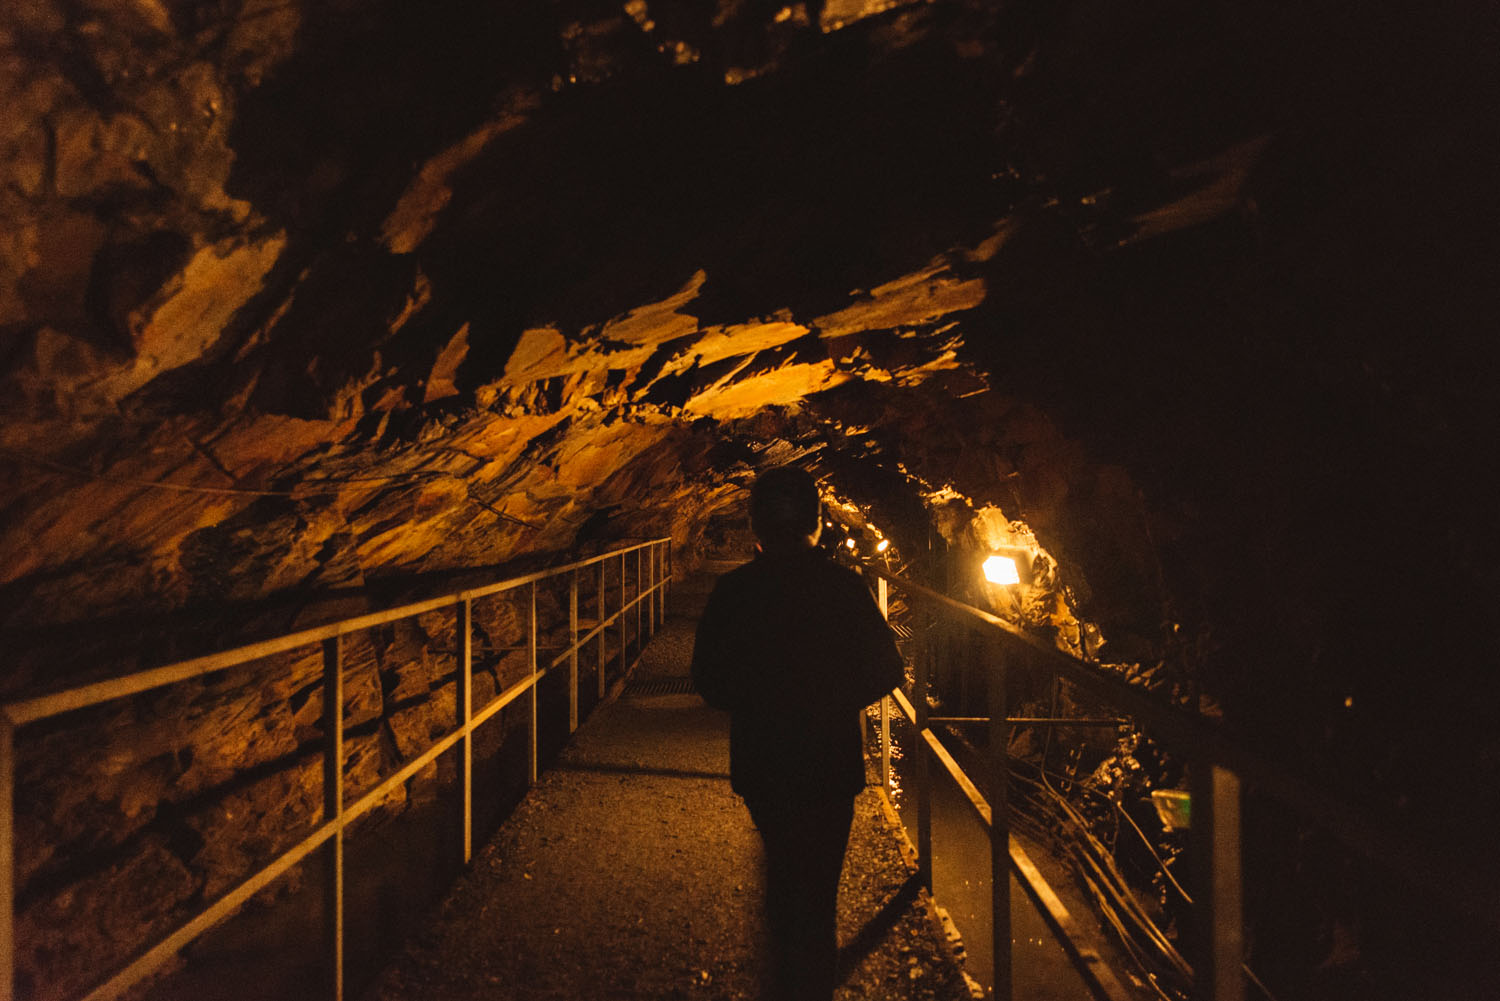 Walking through mine tunnel - Llechwedd Slate Caverns in Blaenau Ffestiniog, North Wales